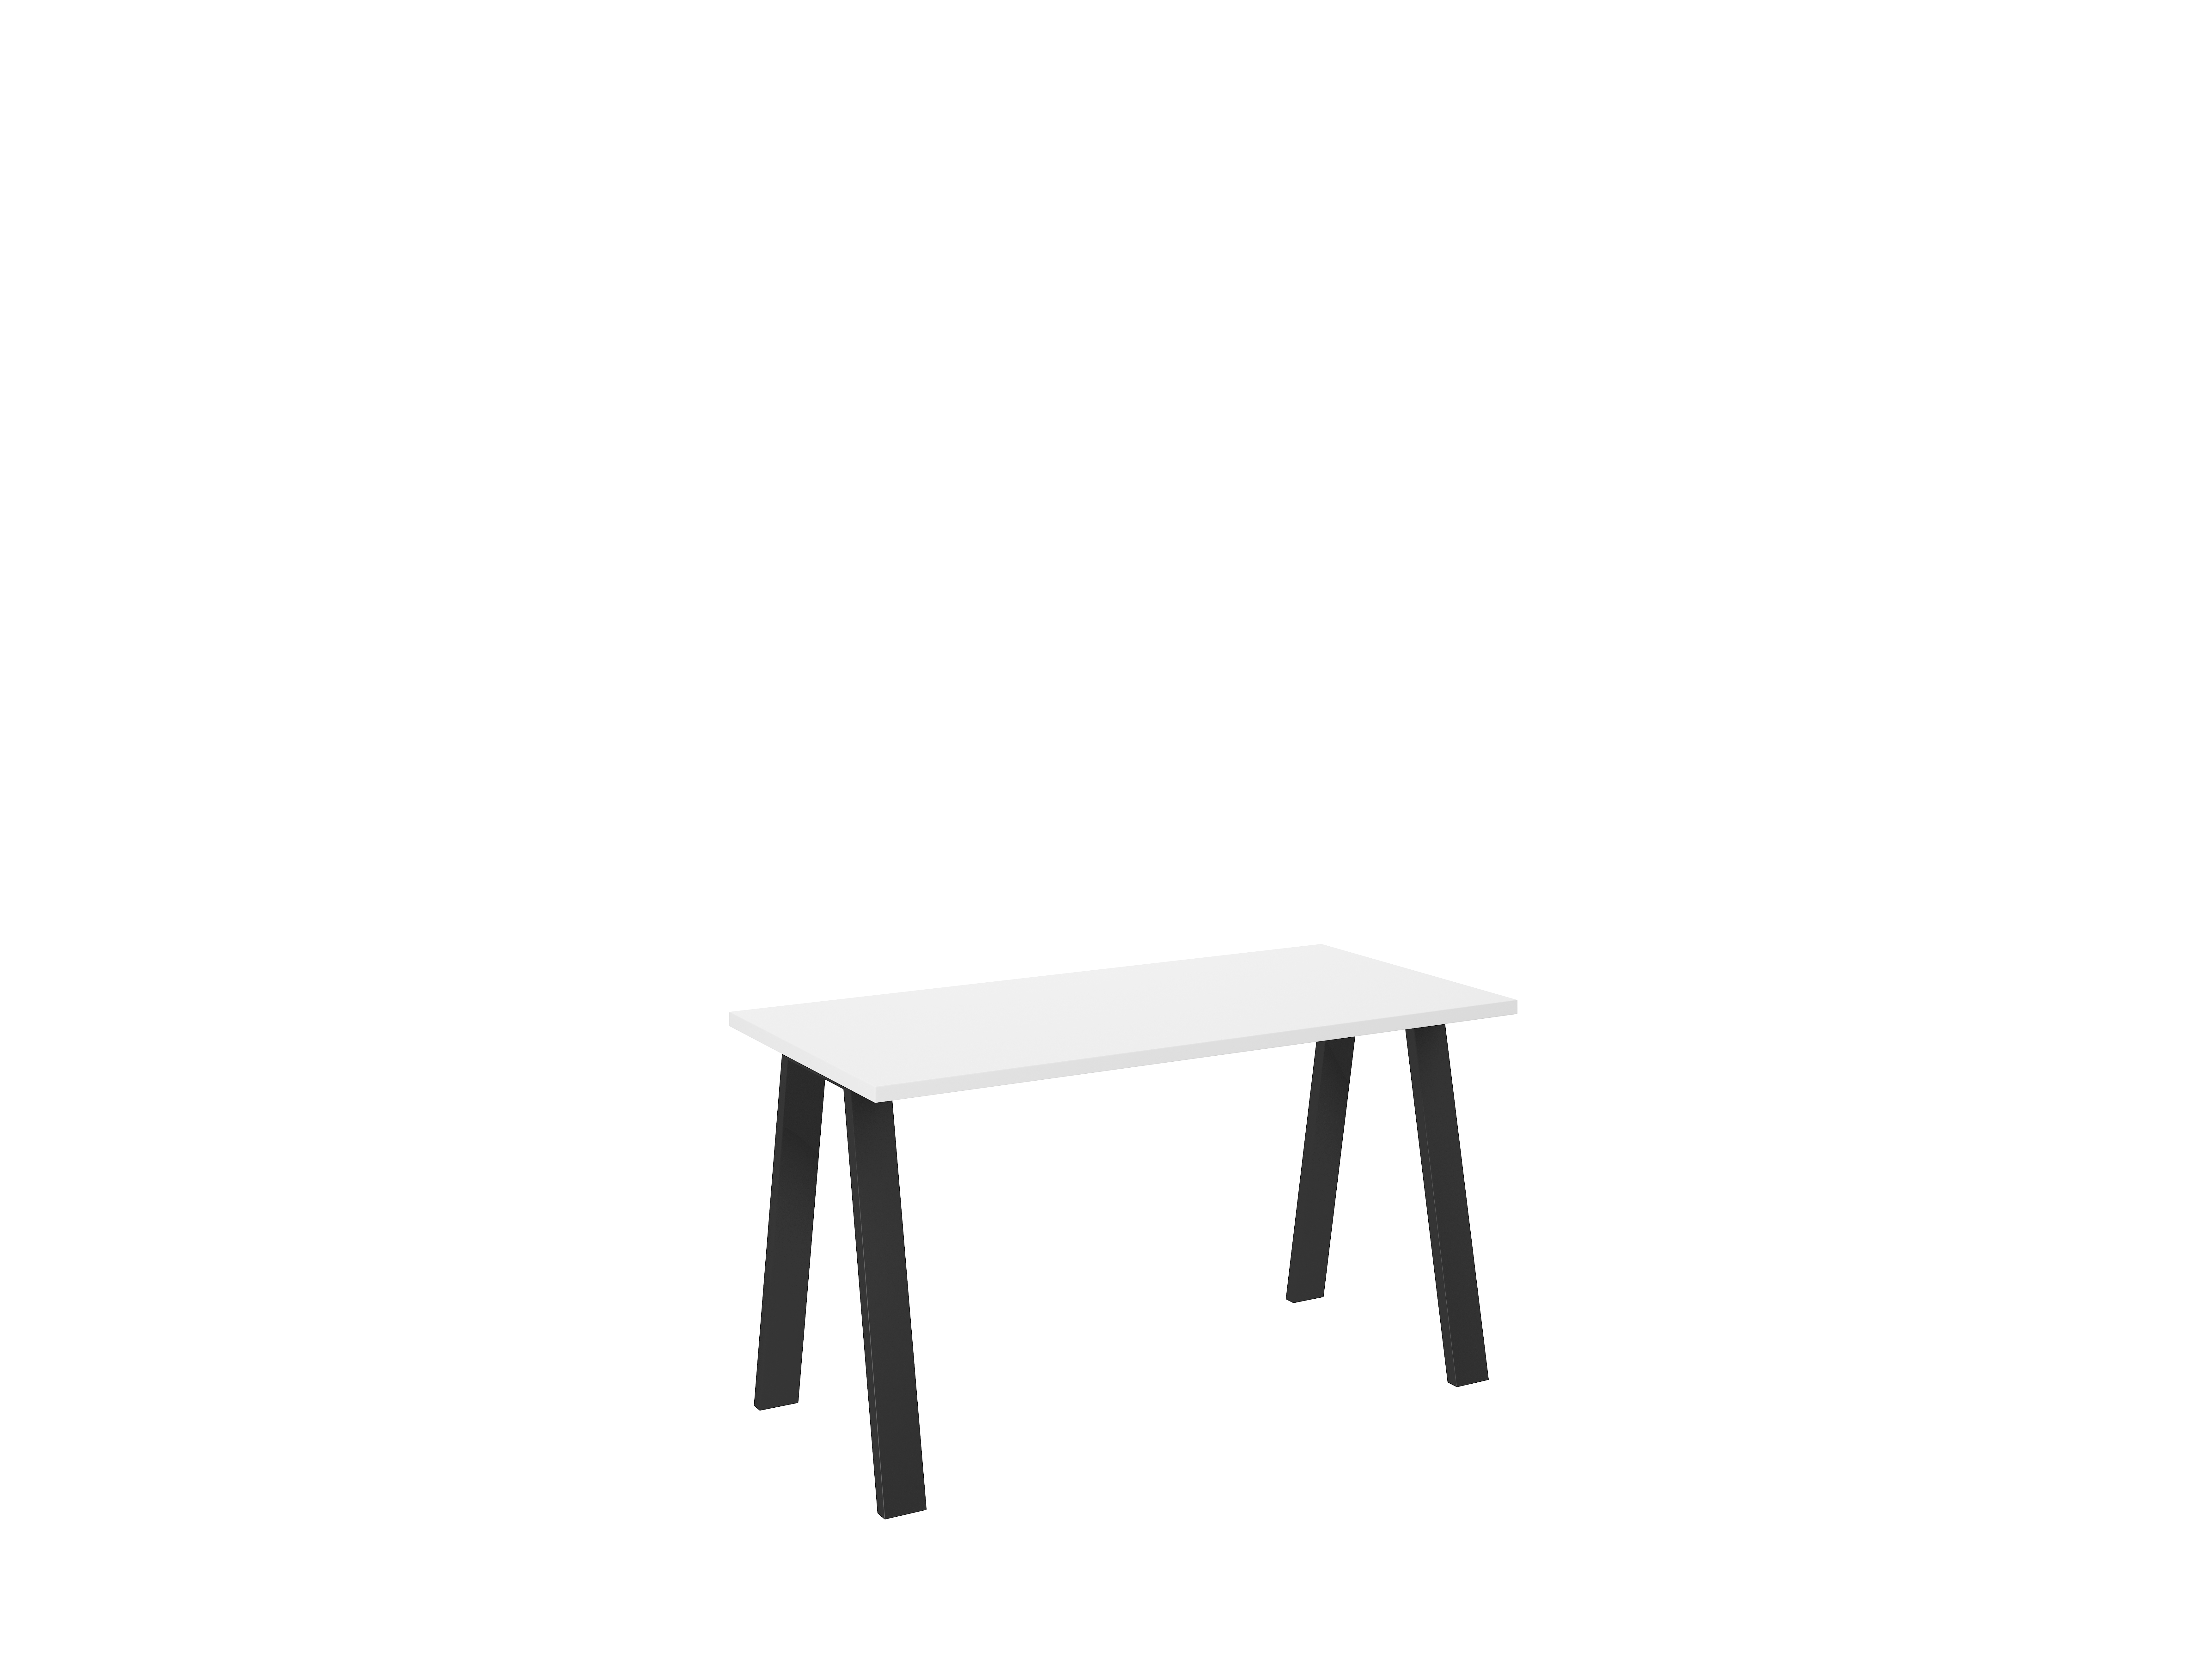  Stůl KLEO 138x67 - Bílý